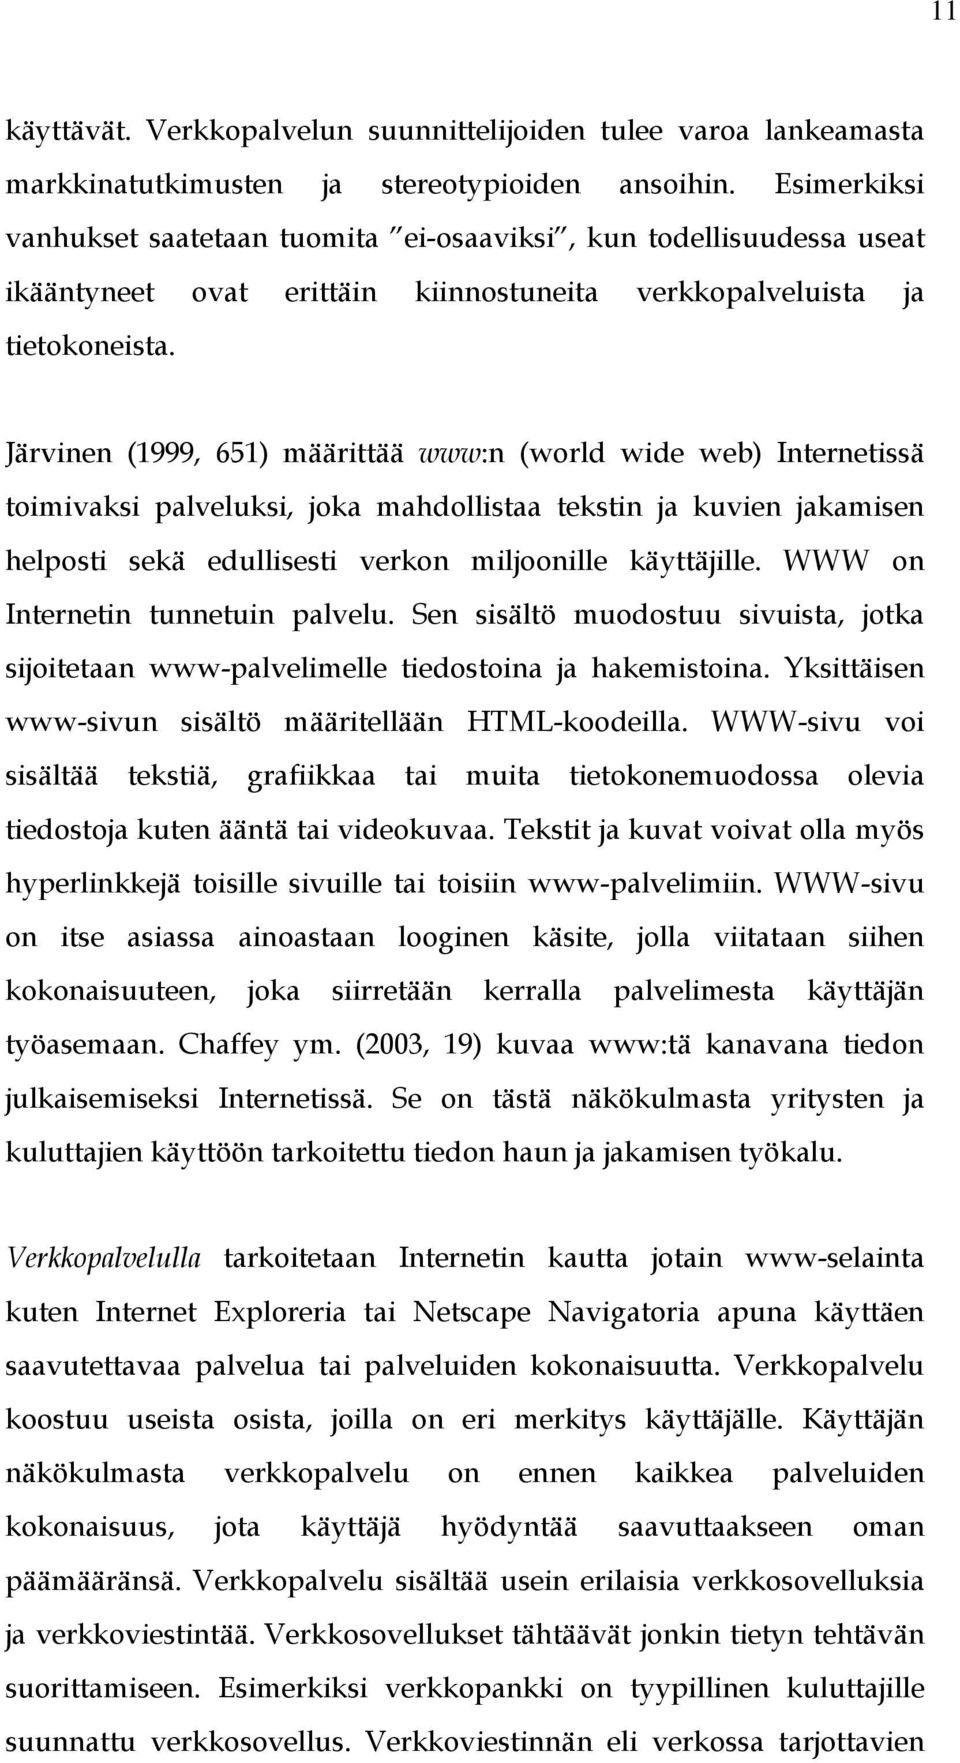 Järvinen (1999, 651) määrittää www:n (world wide web) Internetissä toimivaksi palveluksi, joka mahdollistaa tekstin ja kuvien jakamisen helposti sekä edullisesti verkon miljoonille käyttäjille.